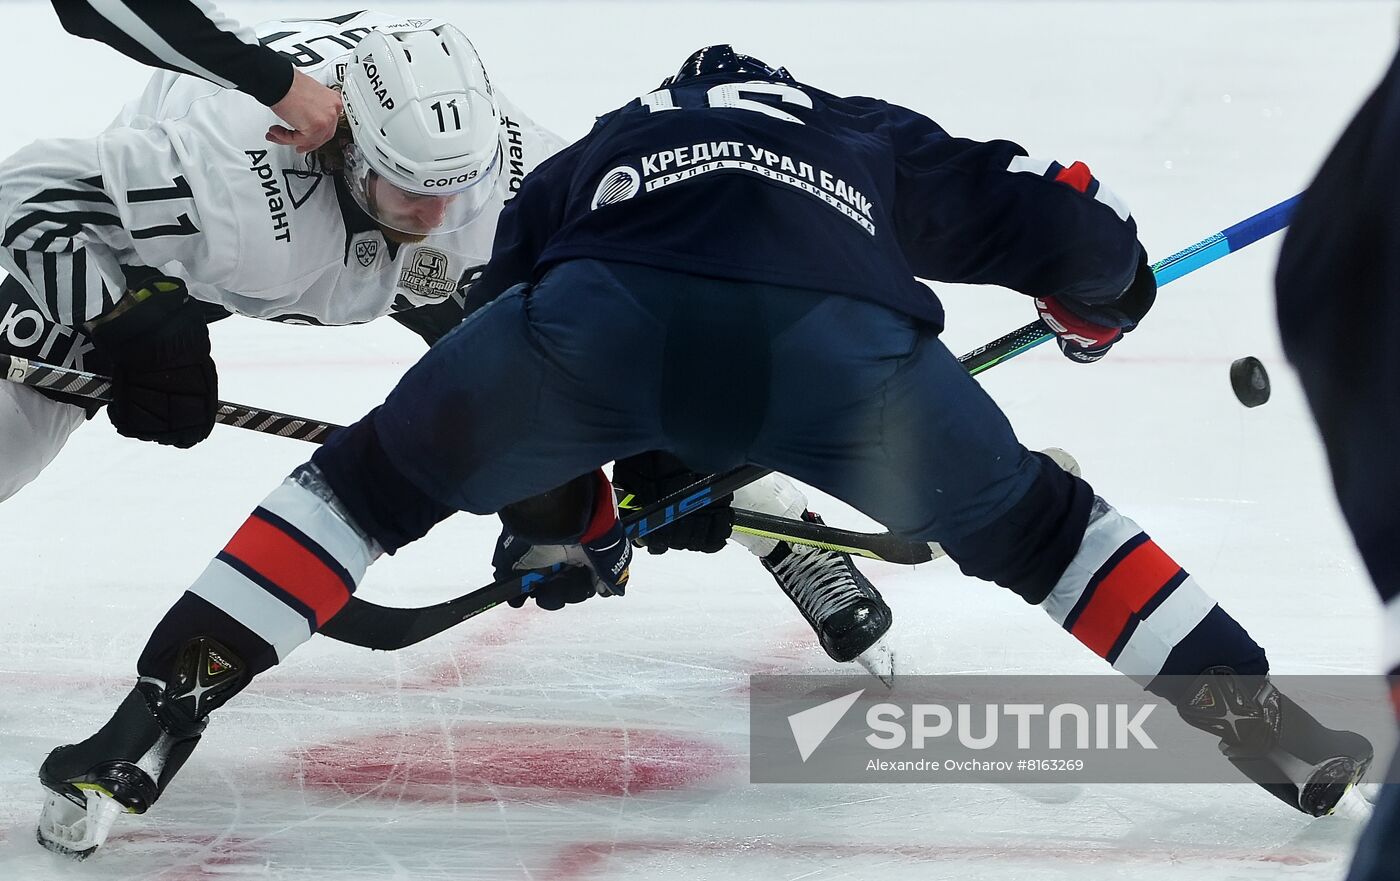 Russia Ice Hockey Kontinental League Metallurg - Traktor